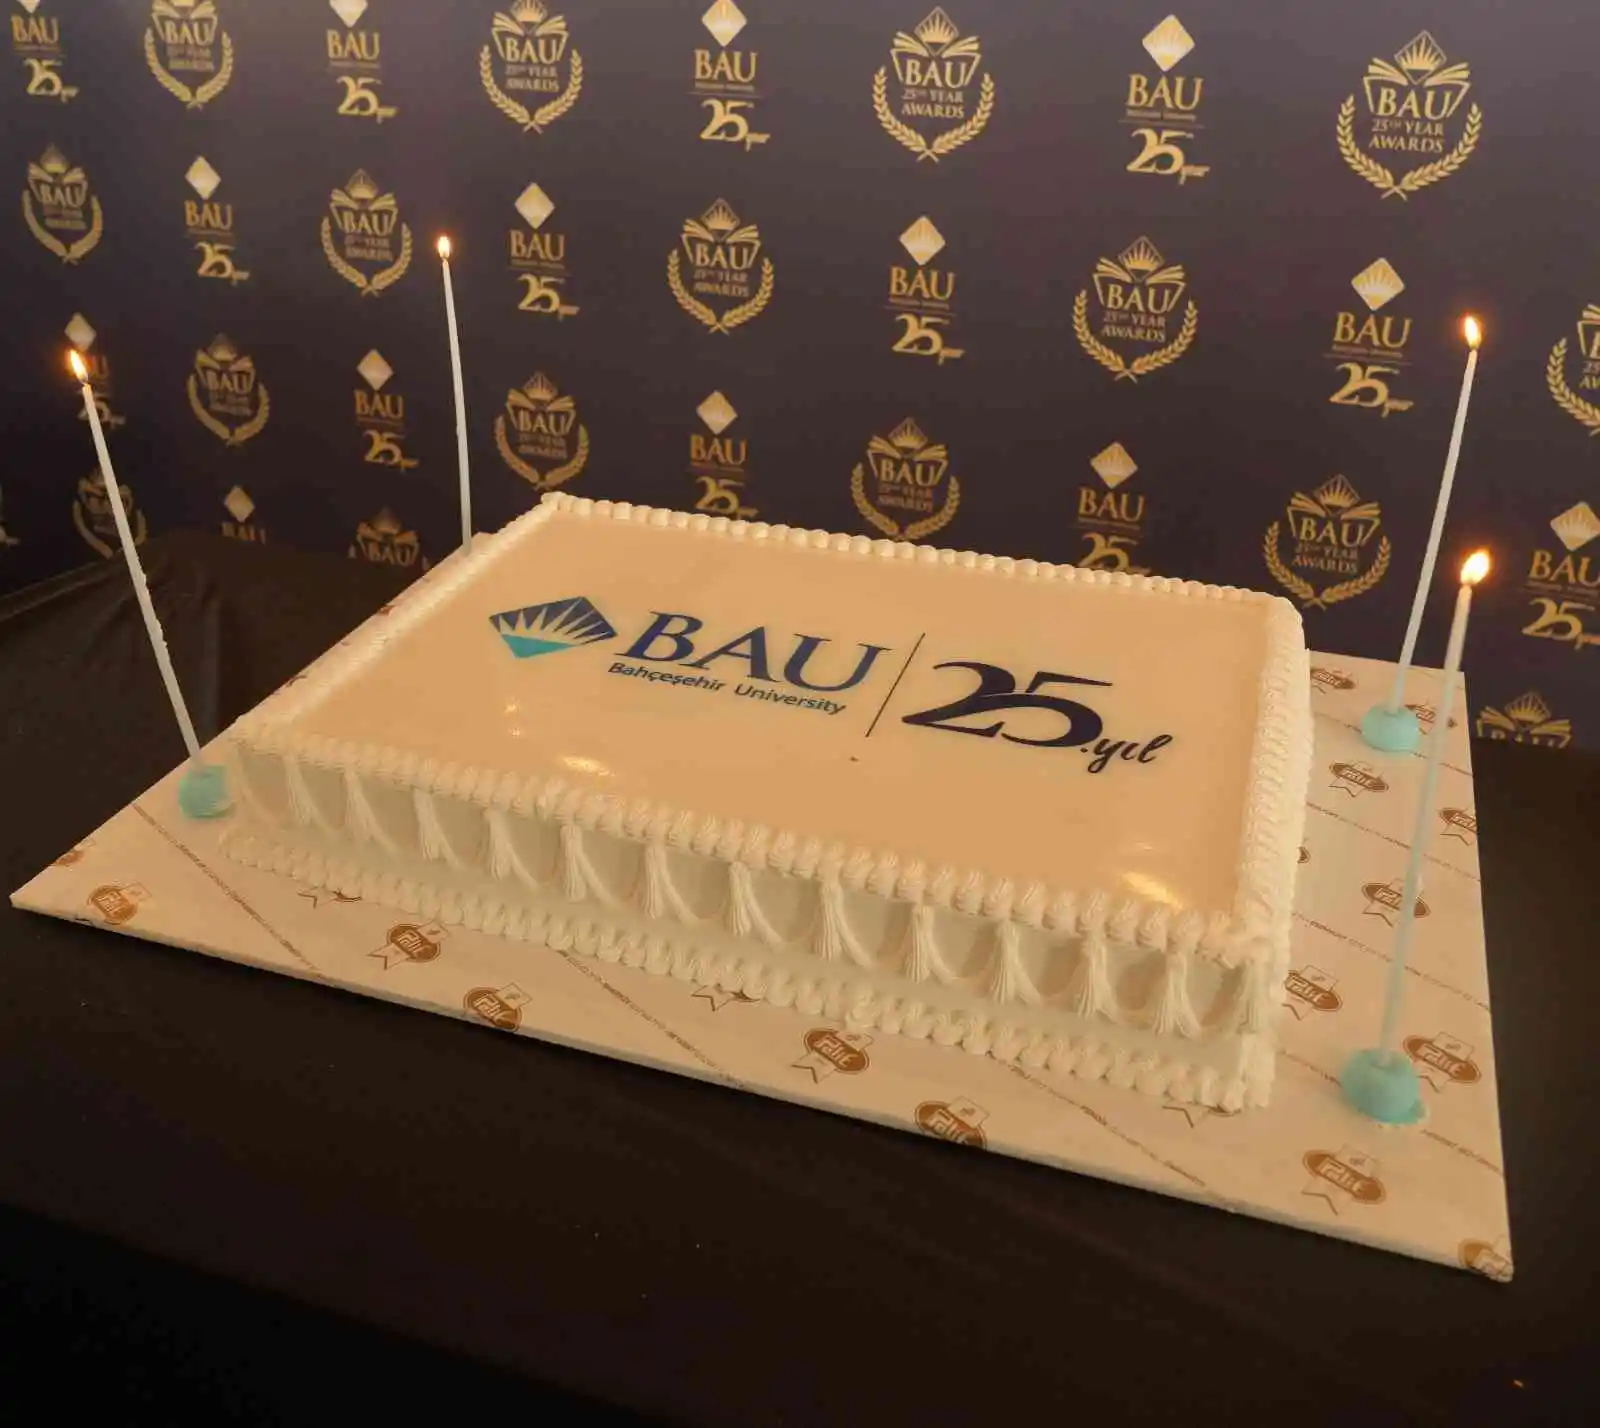 BAU 25'nci yaşını kutluyor
